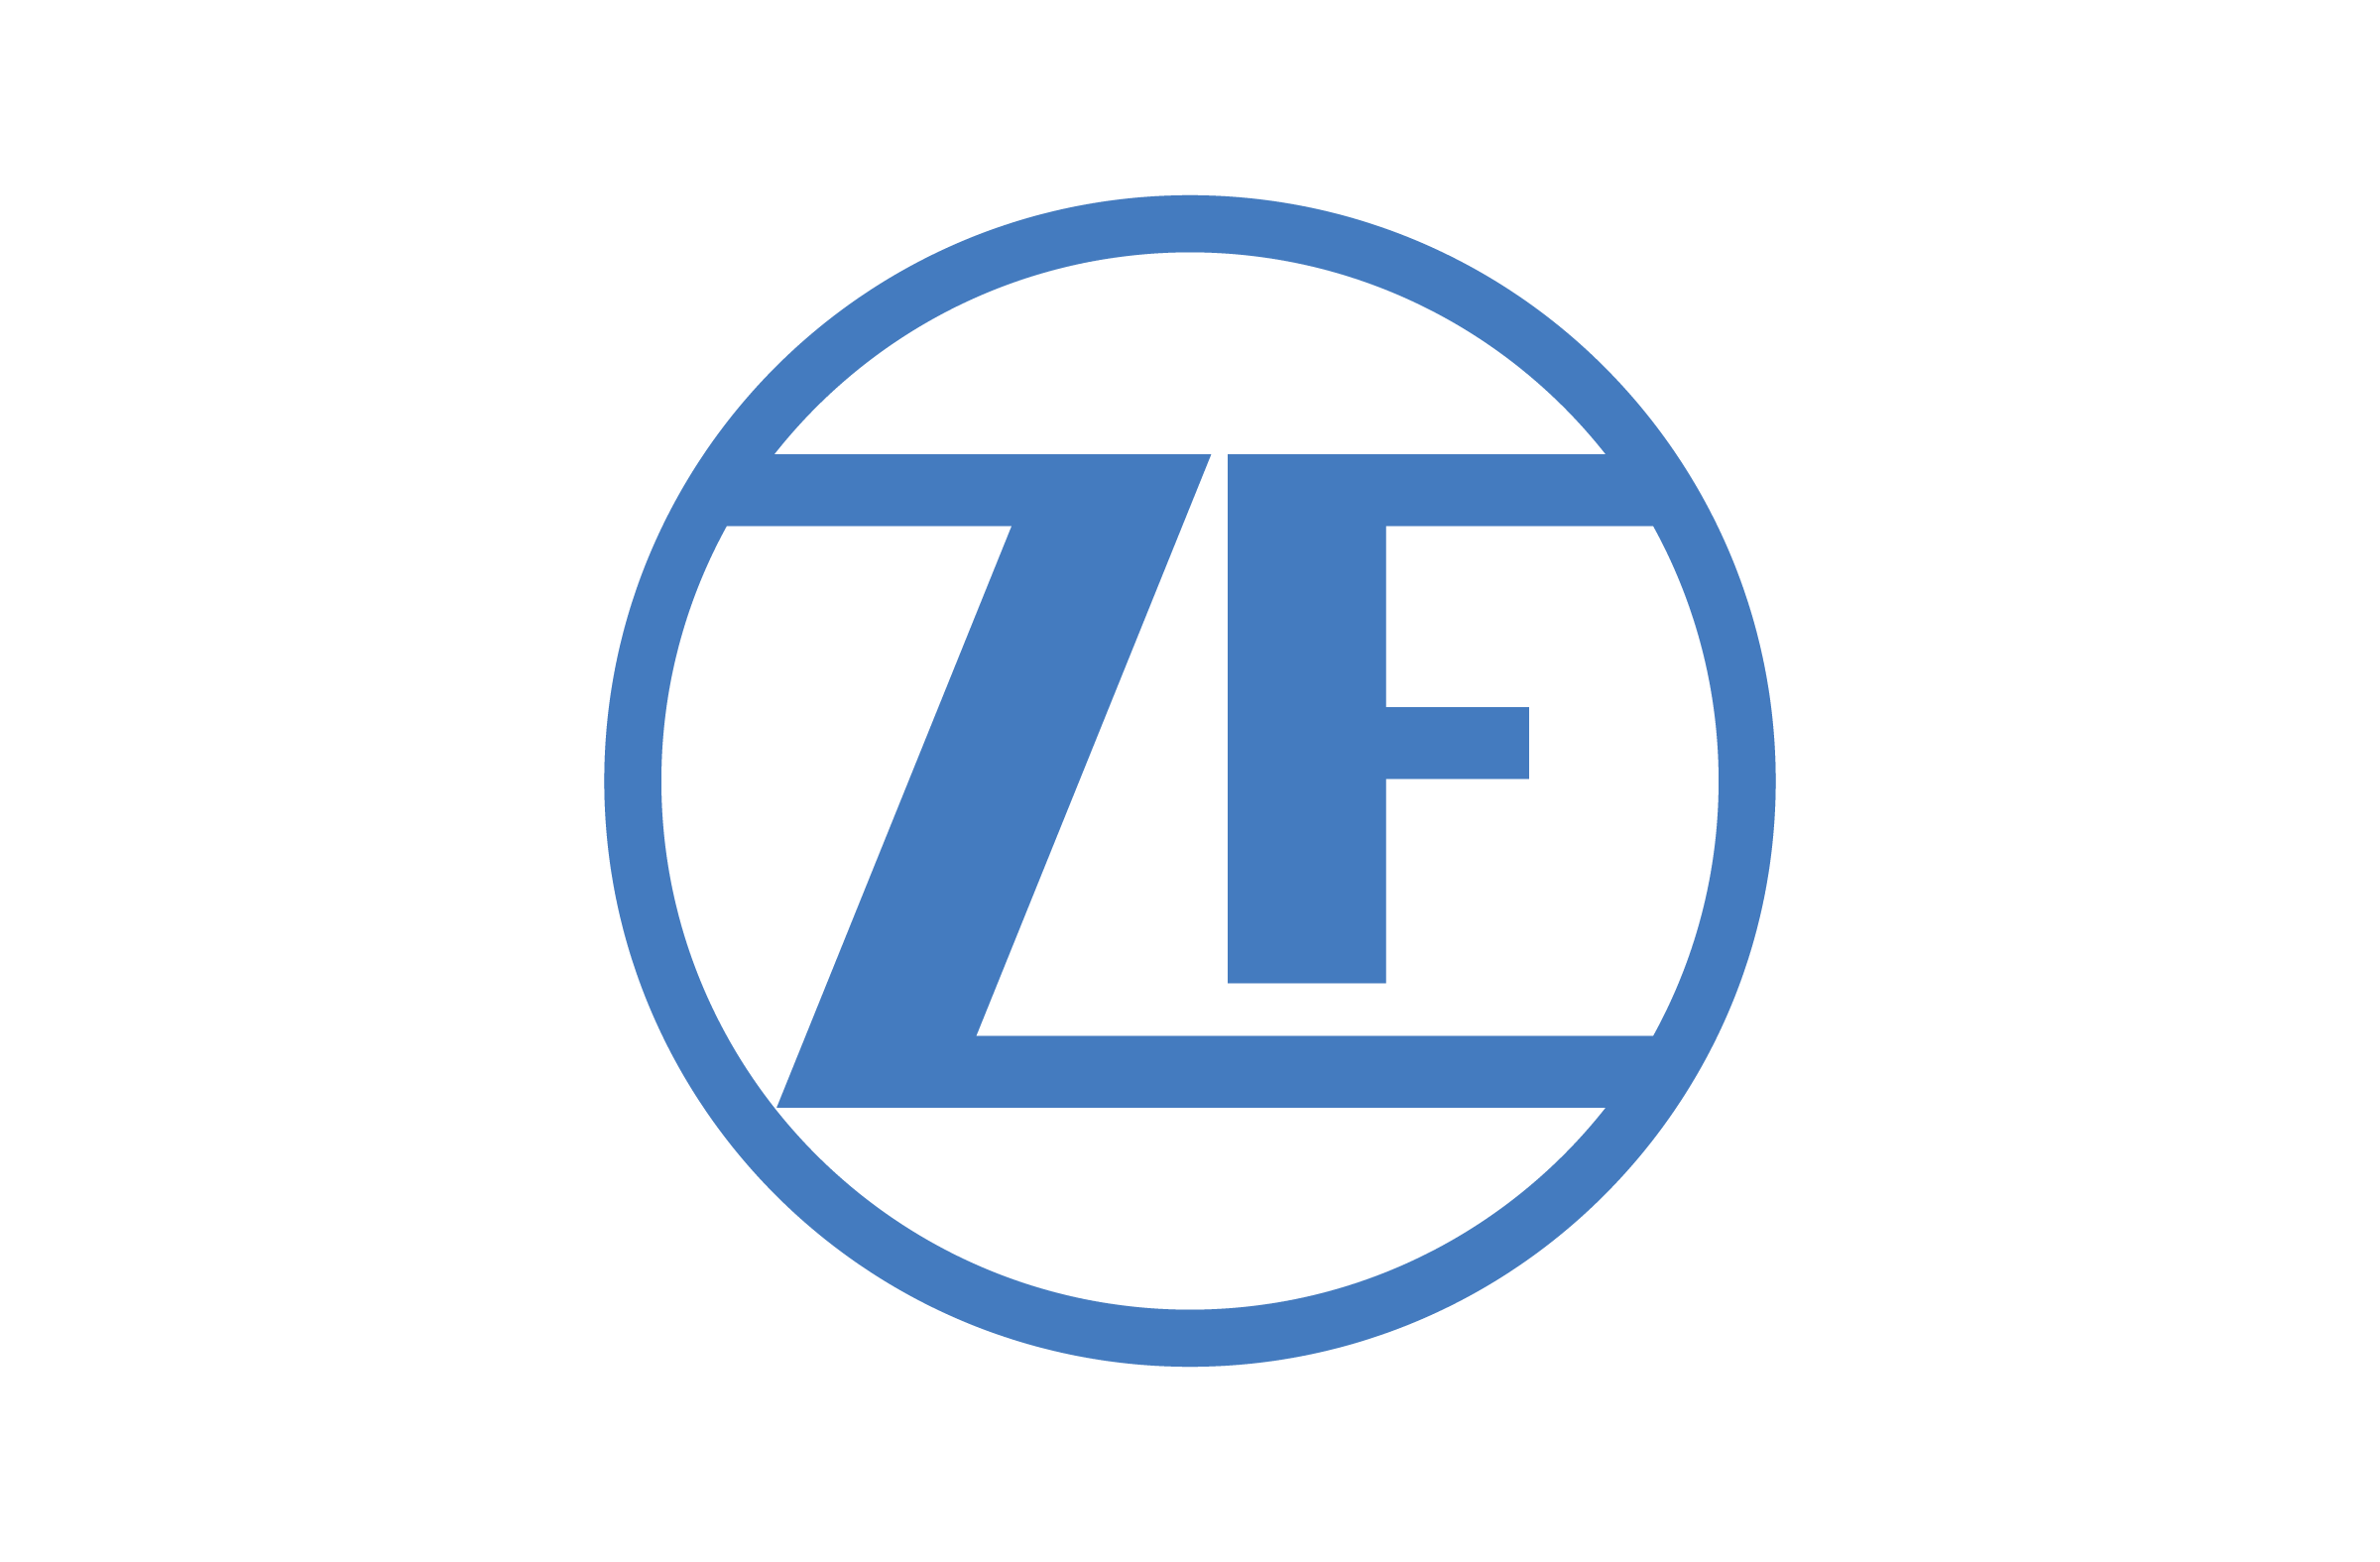 New ZF Logo - new ZF logo